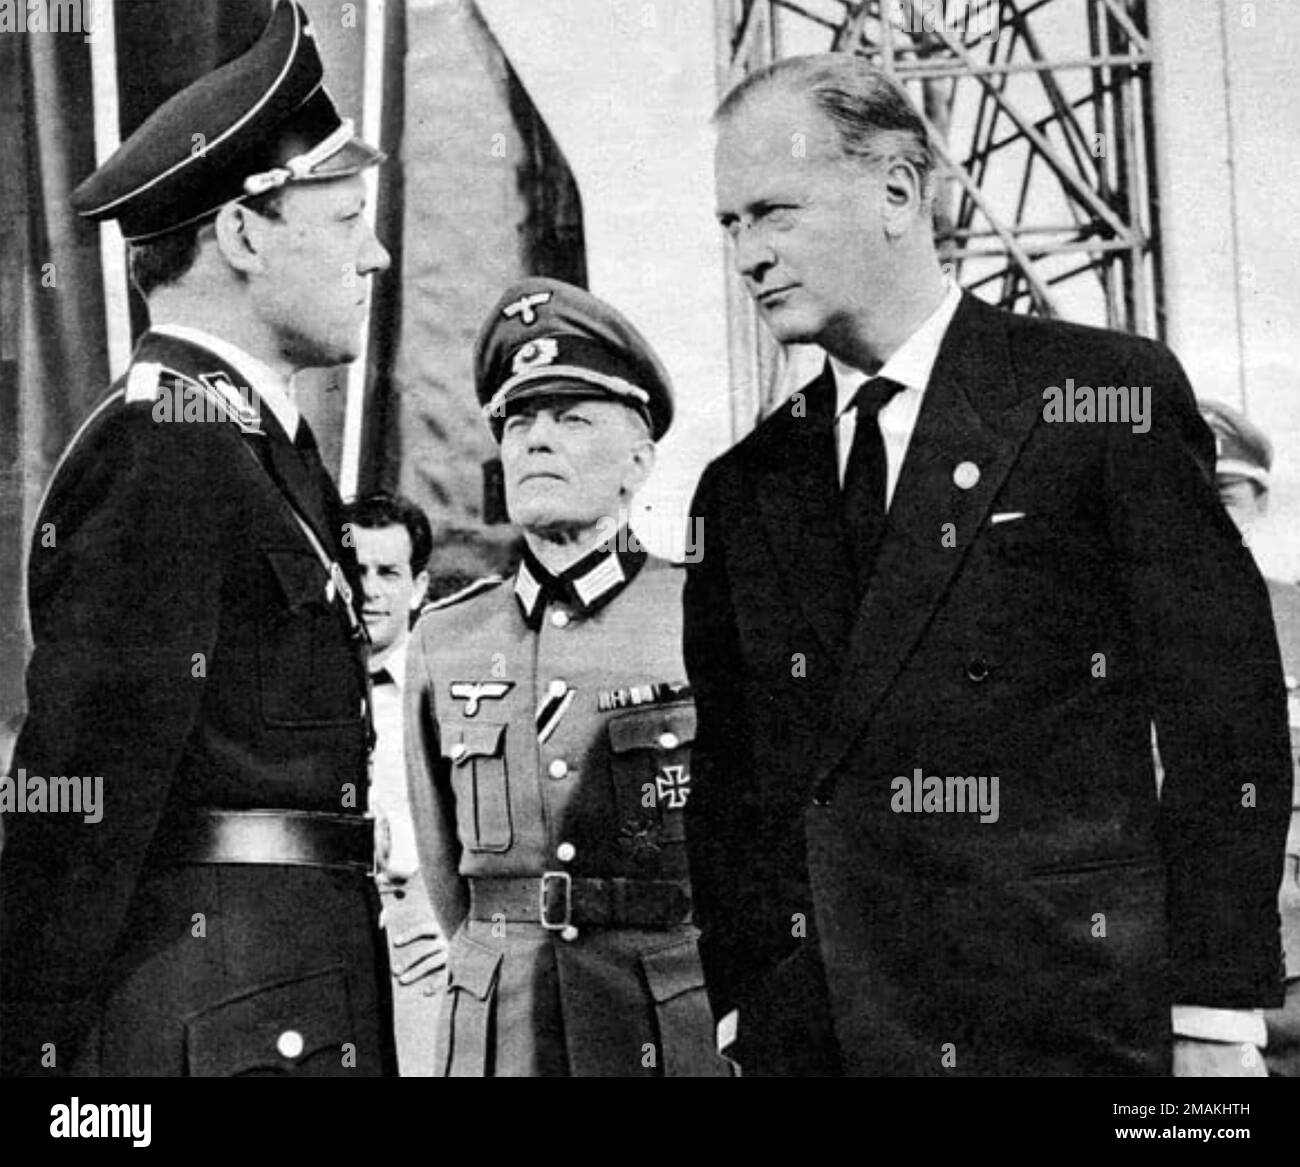 APUNTO A LAS ESTRELLAS 1960 Columbia Pictures película con Curt Jurgens a la derecha como Wernher von Braun. Foto de stock